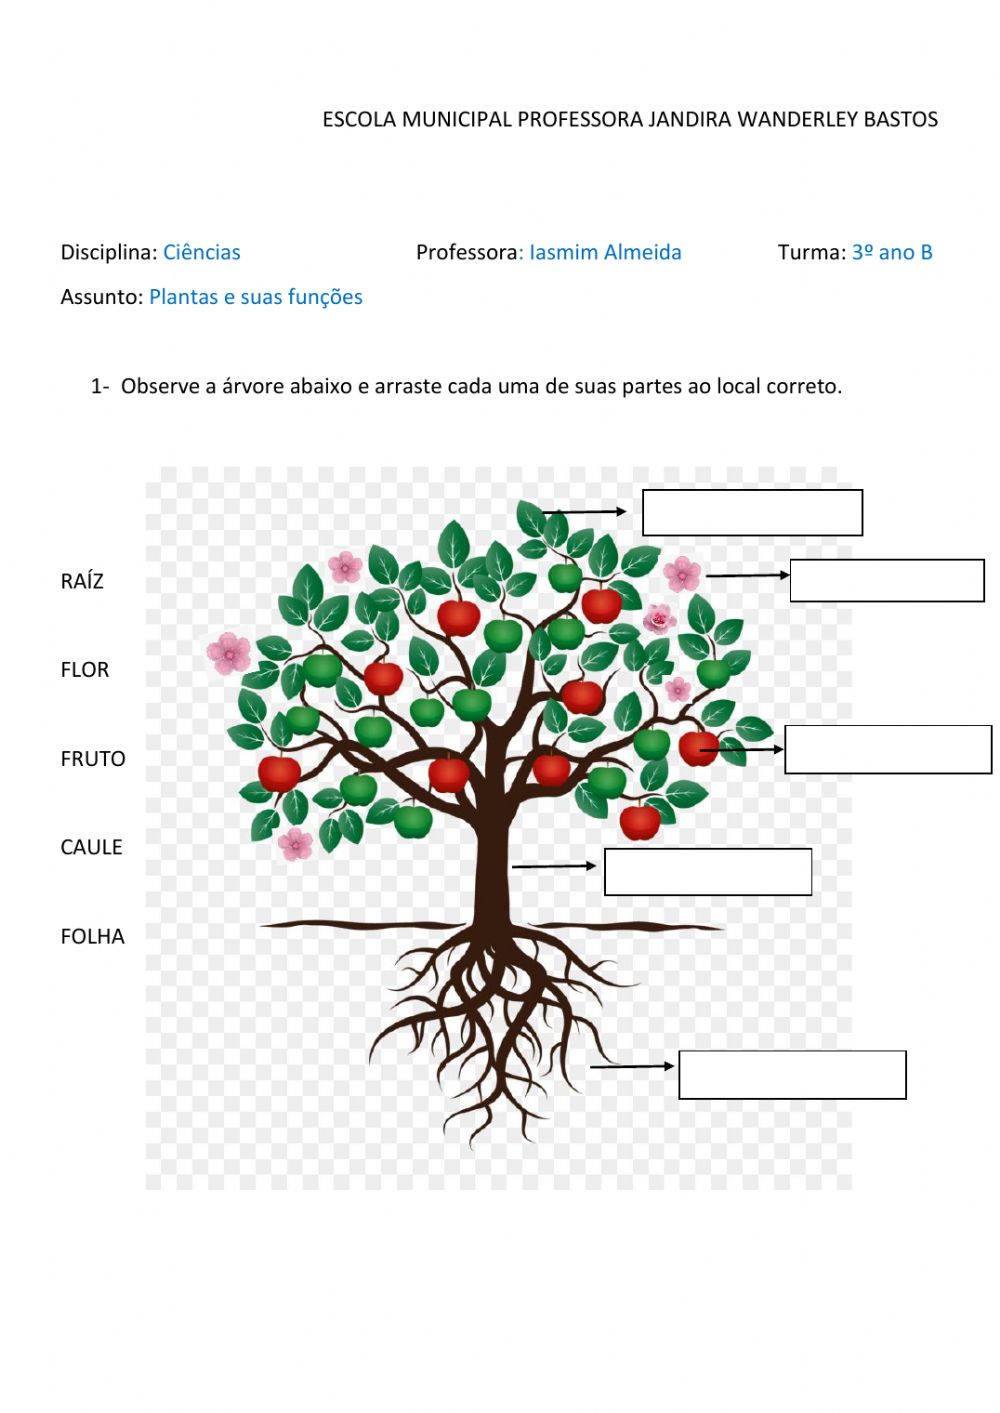 Ciências - Árvores e suas funções